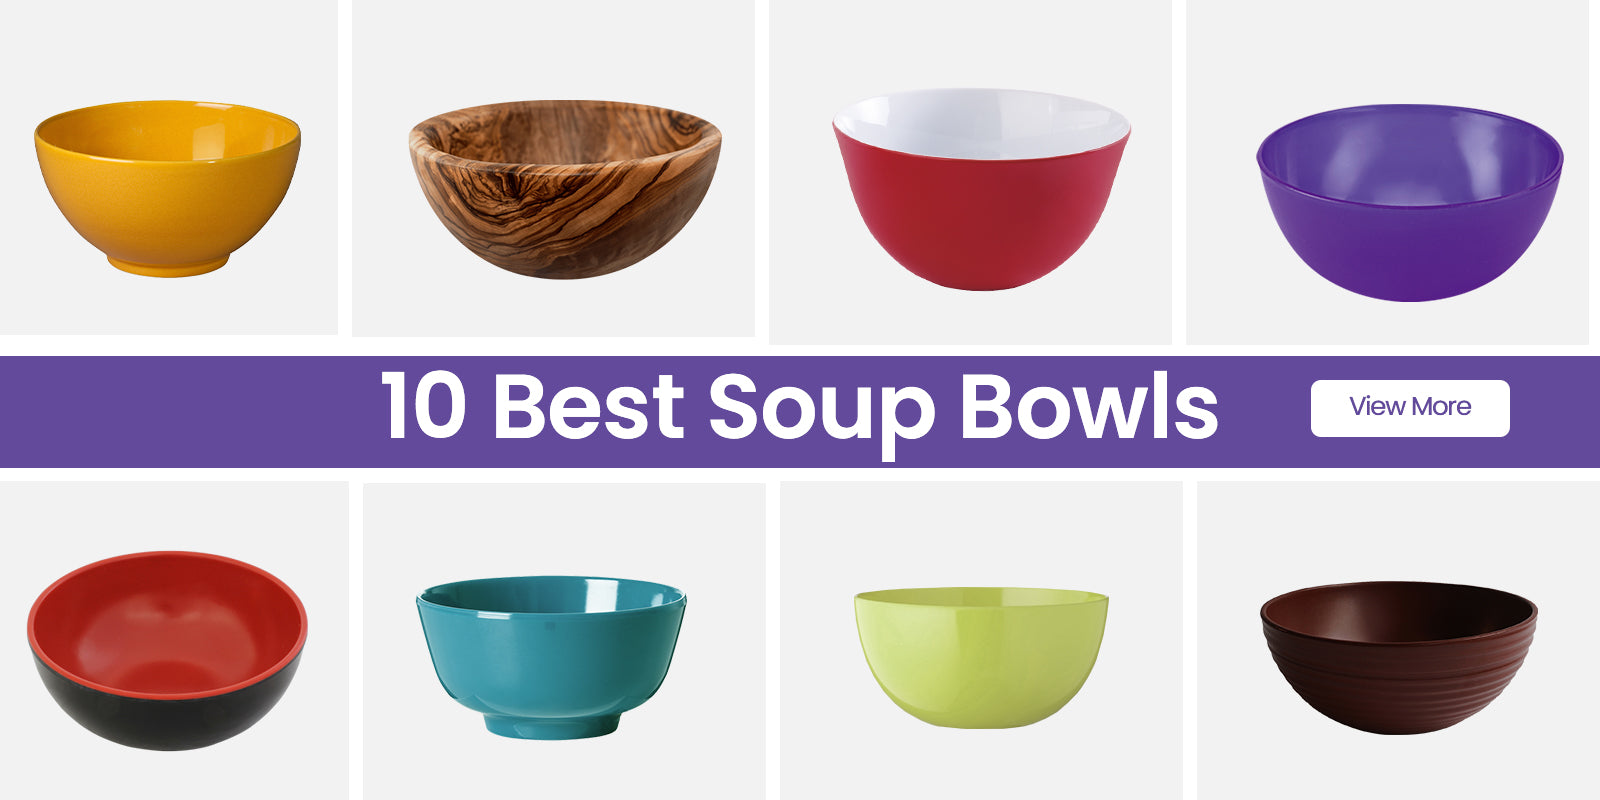 Restaurantware Voga 180 oz Deep Soup Bowls,2 Dishwasher-Safe Square Serving Bowls-BPA-Free,Shatter-Resistant,White Melamine Salad Eating Bowls,Serve